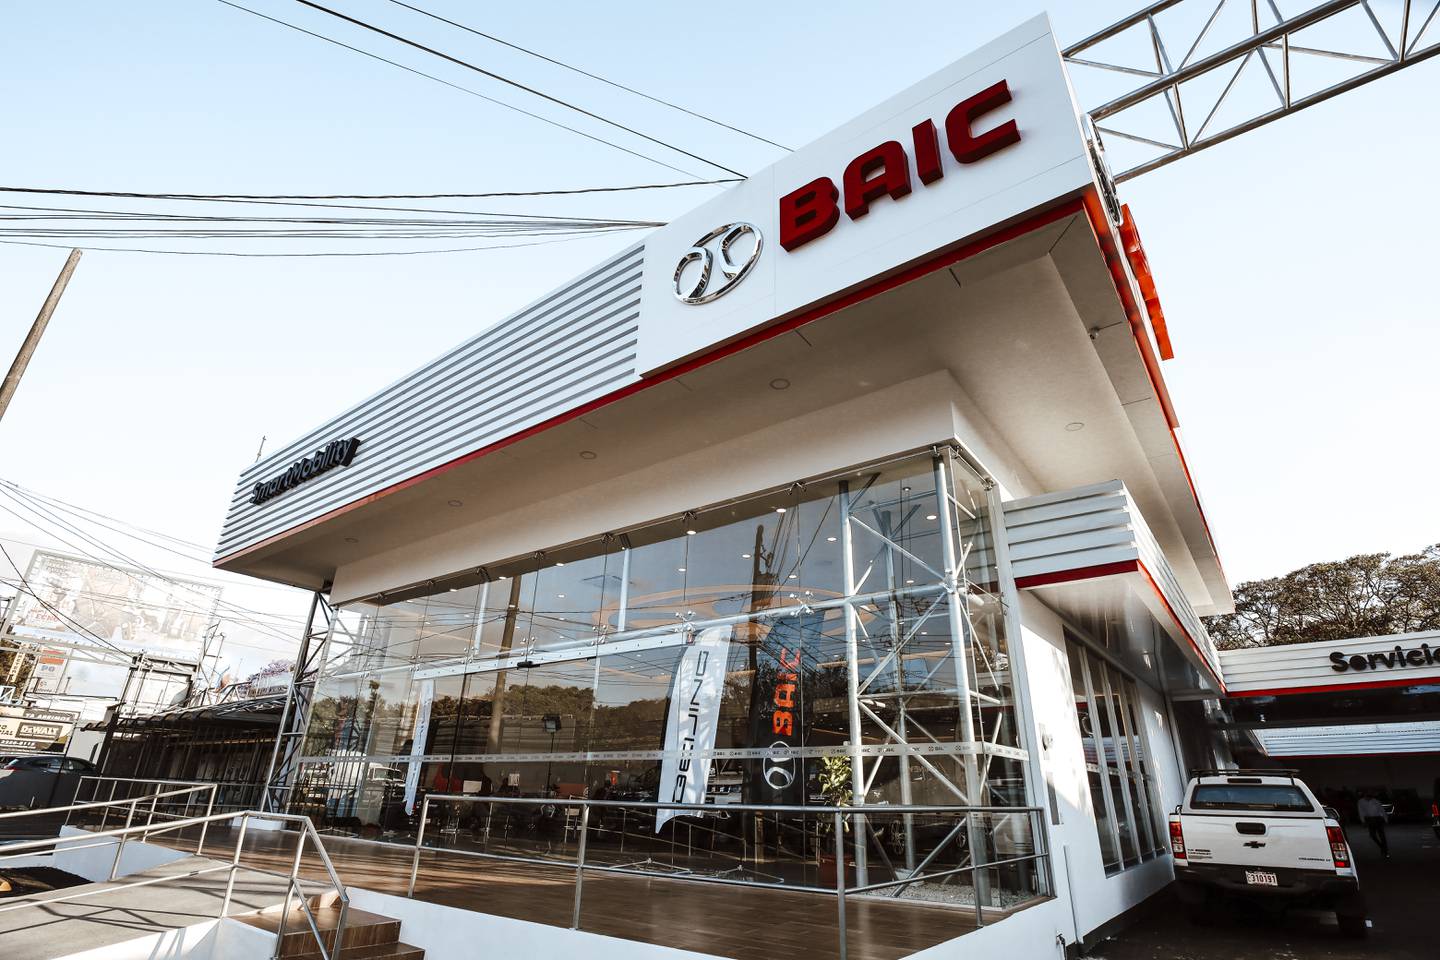 La empresa automotriz china BAIC anunció el inicio de operaciones en Costa Rica este 9 de marzo, con la apertura de su primer sucursal en la Uruca, en San José. Foto: Cortesía BAIC Costa Rica.